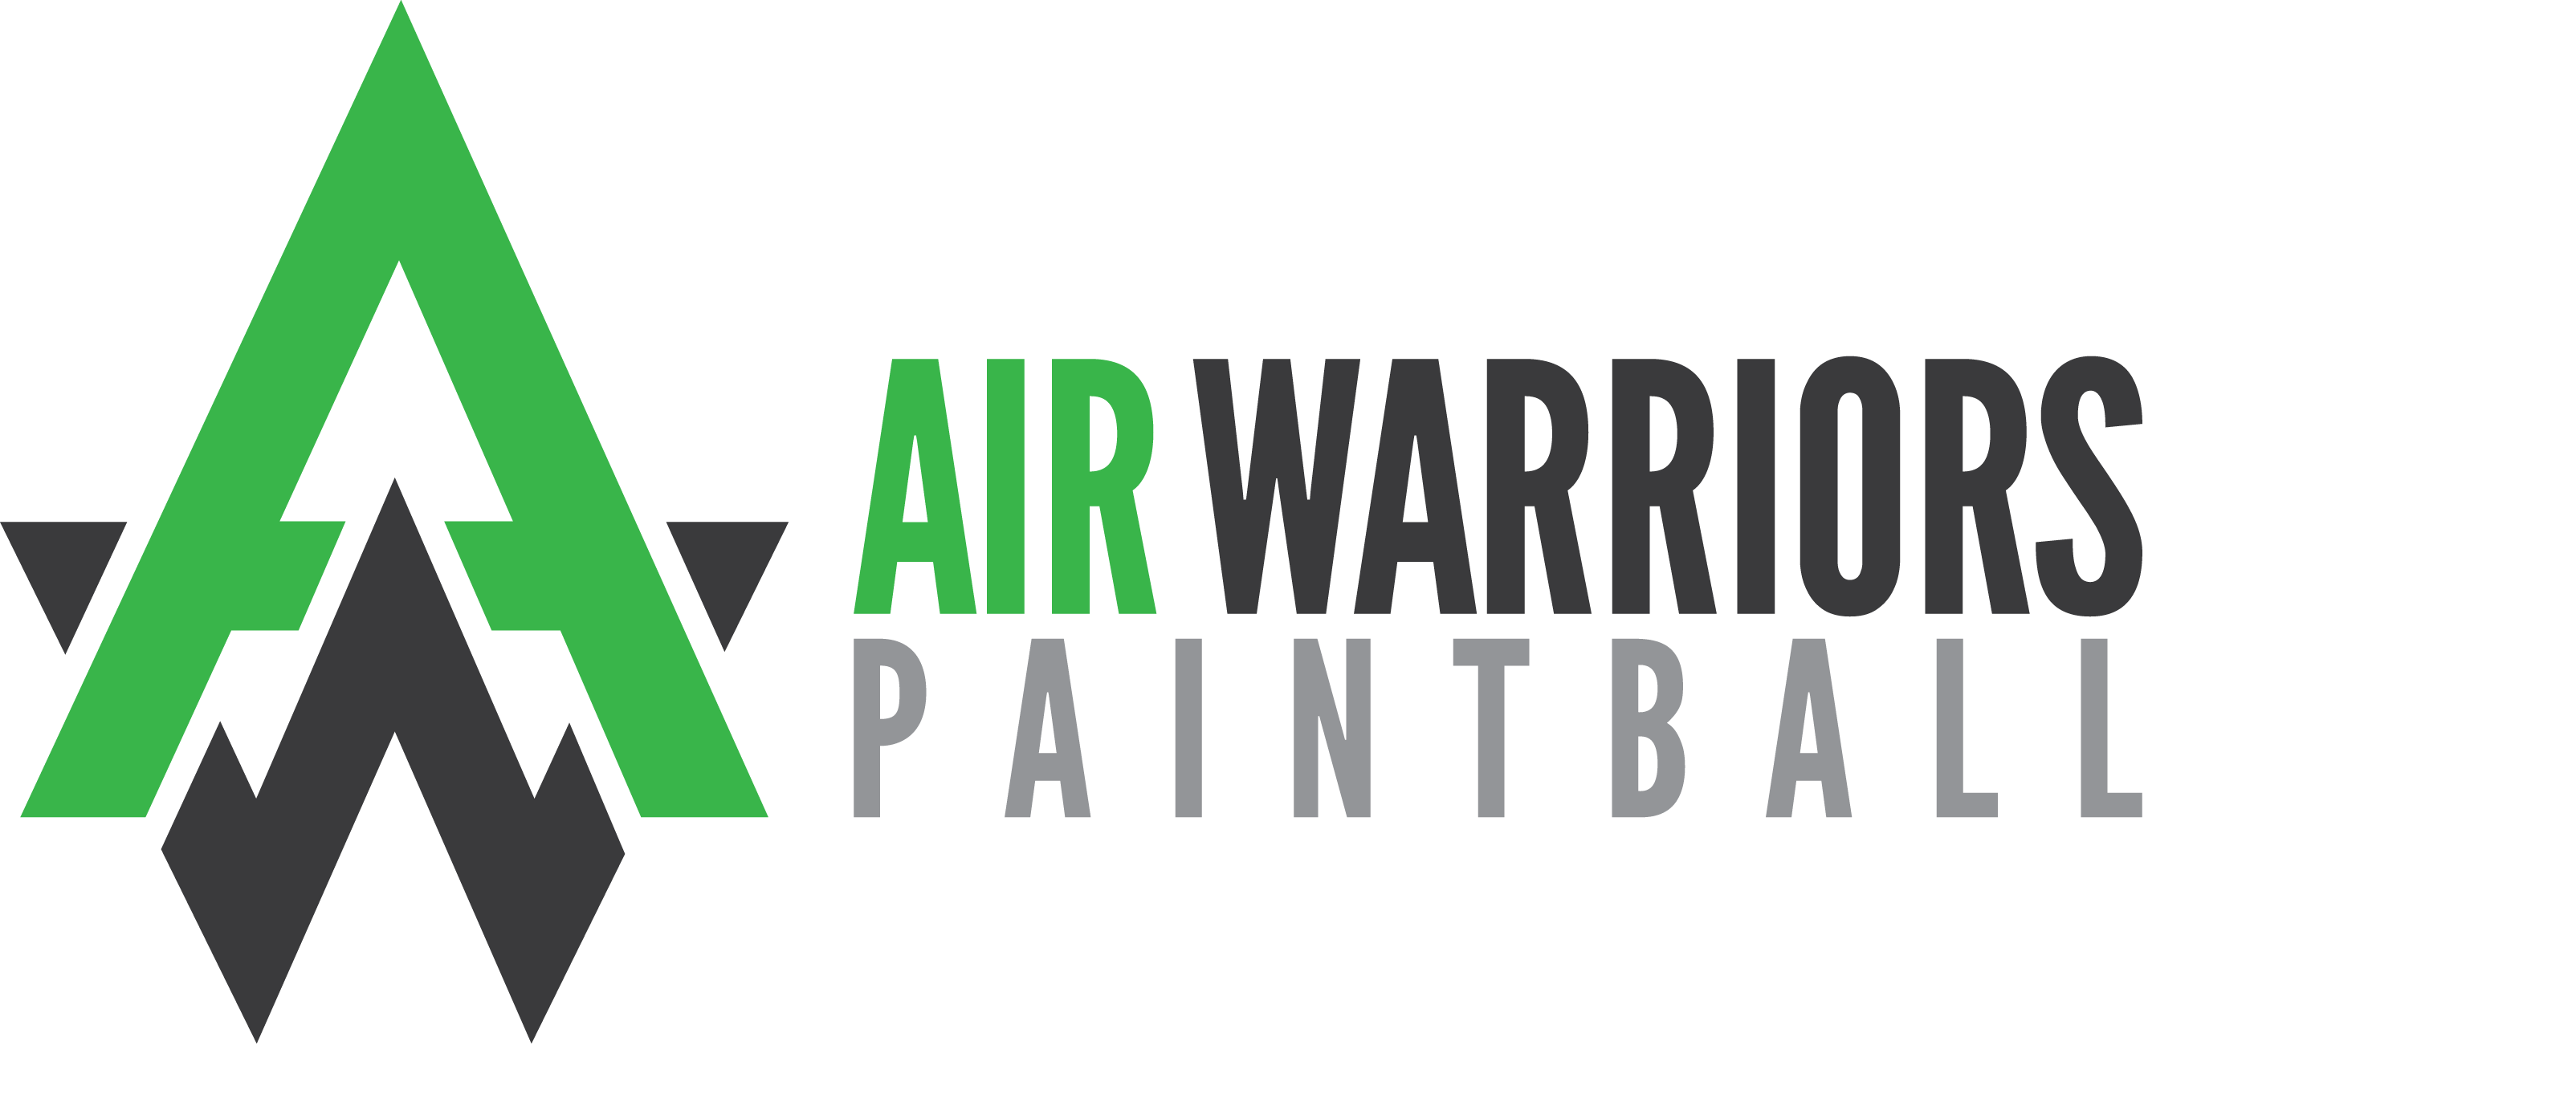 Air Warriors Paintball League